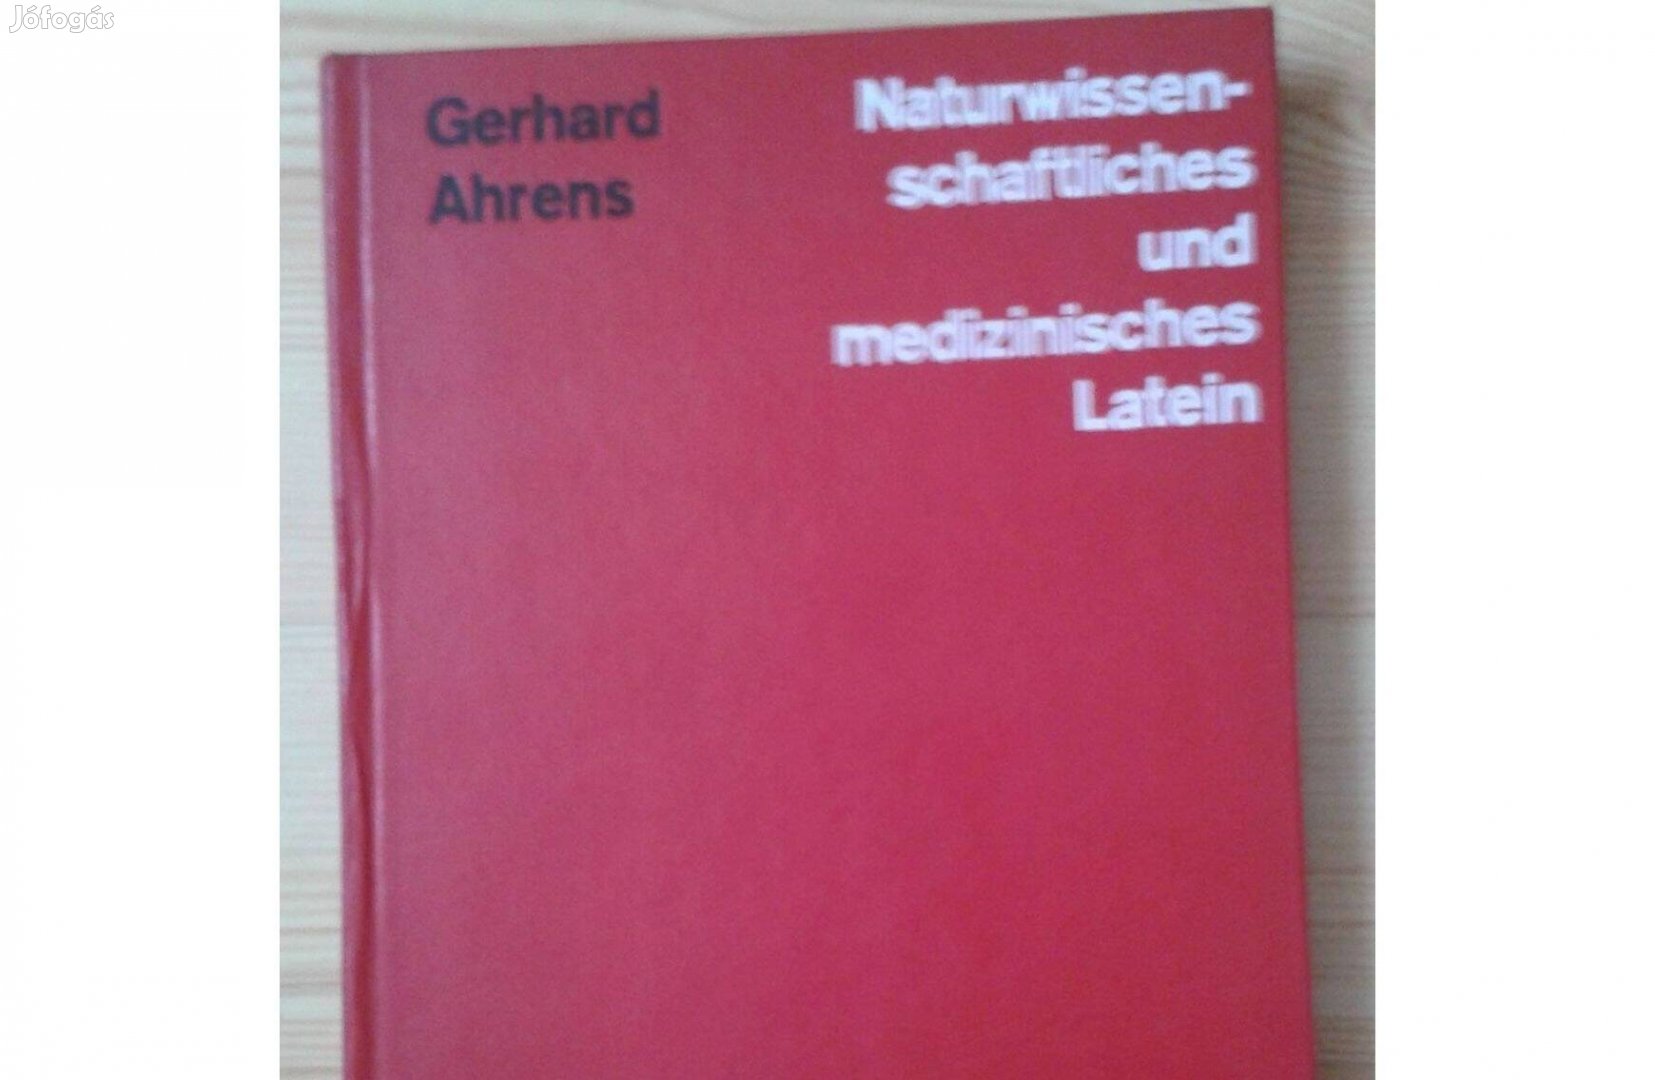 Gerhard Ahrens, Naturwissenschaftliches und medizinisches, Latein